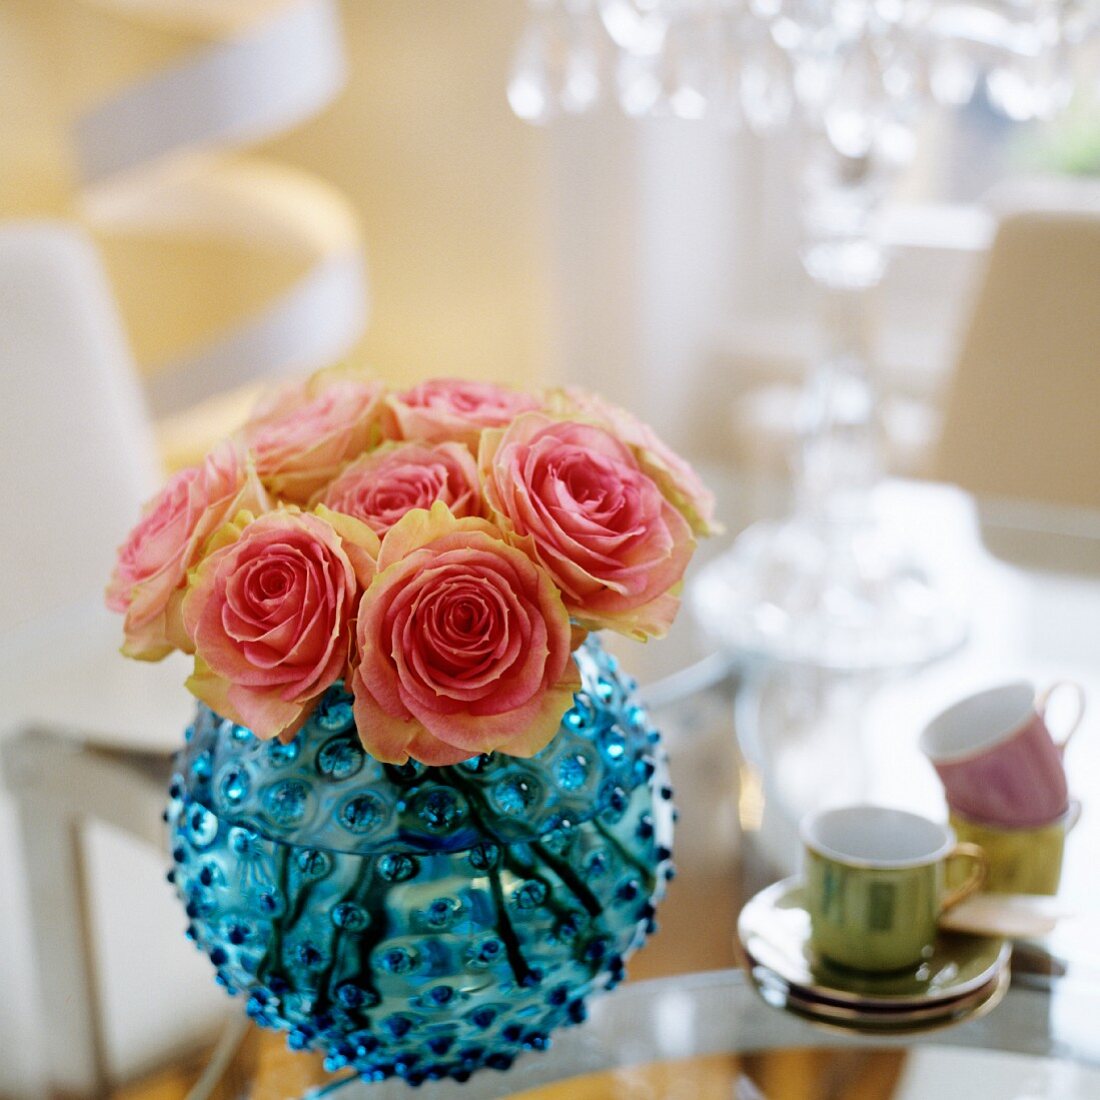 Kugelfürmige Vase aus blauem Glas mit rosa Rosen und Mokkatässchen auf Tisch